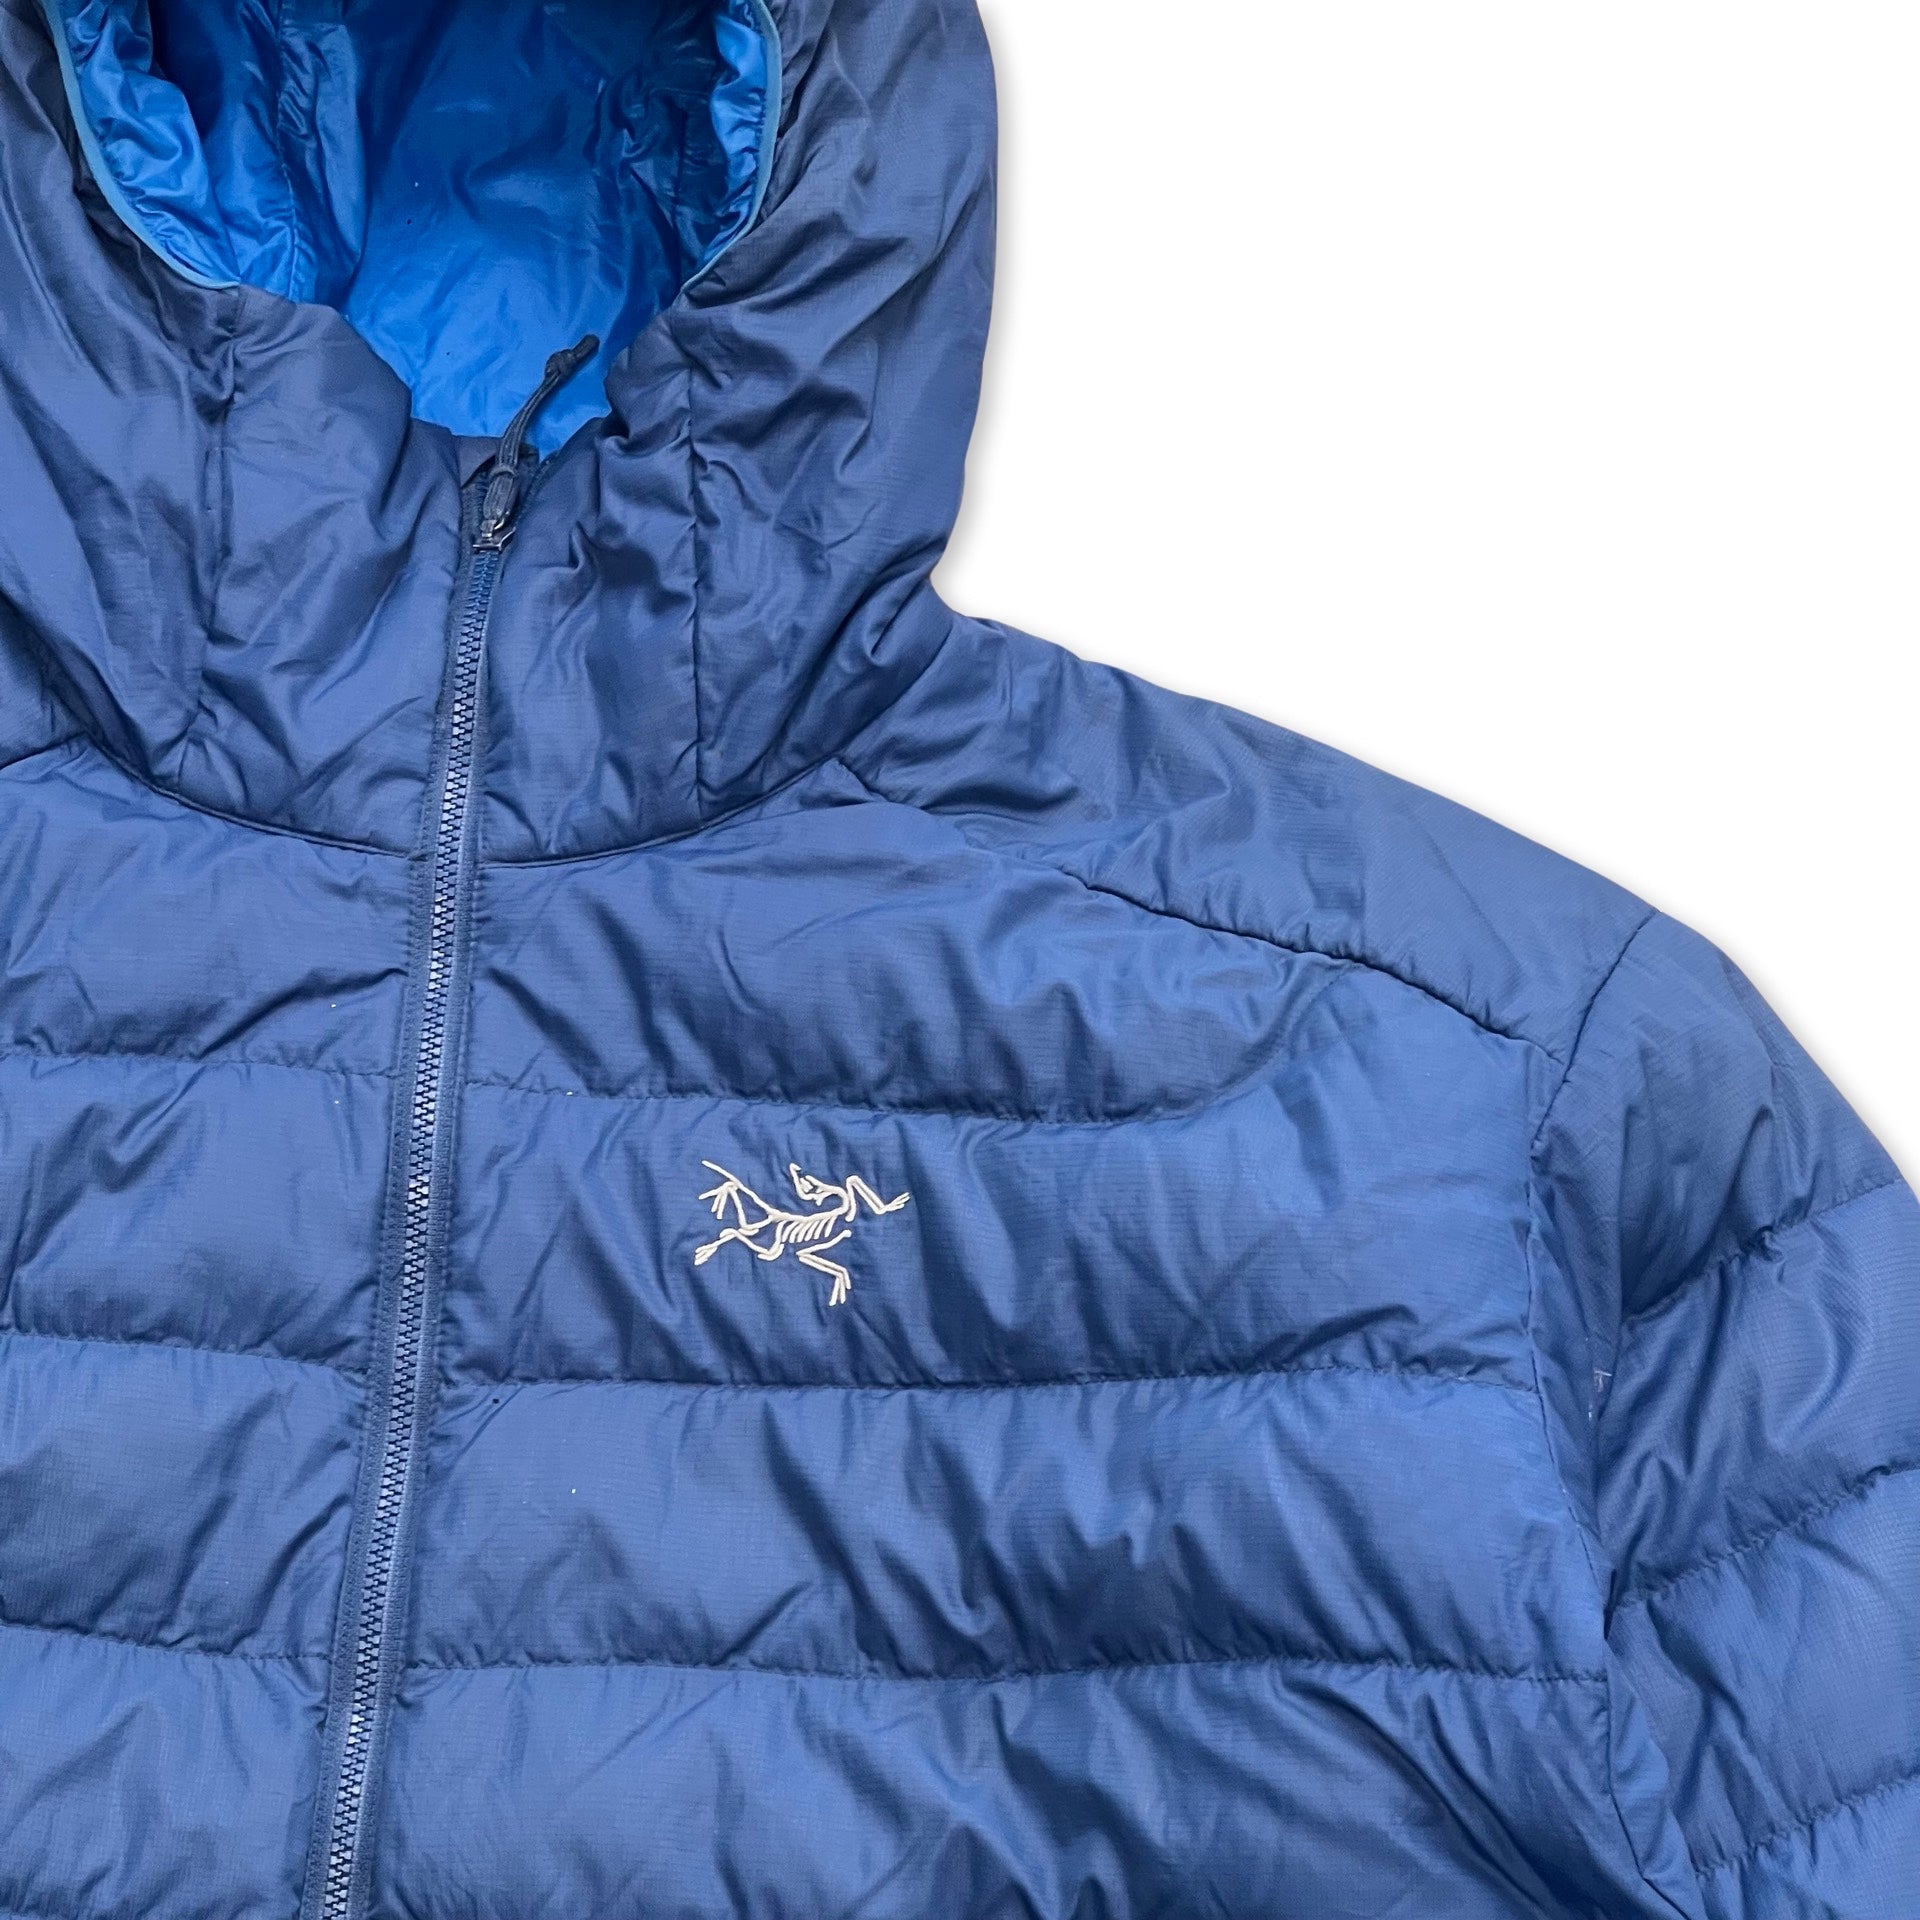 Arc'teryx Puffer Jacket in blue – Deadsea London